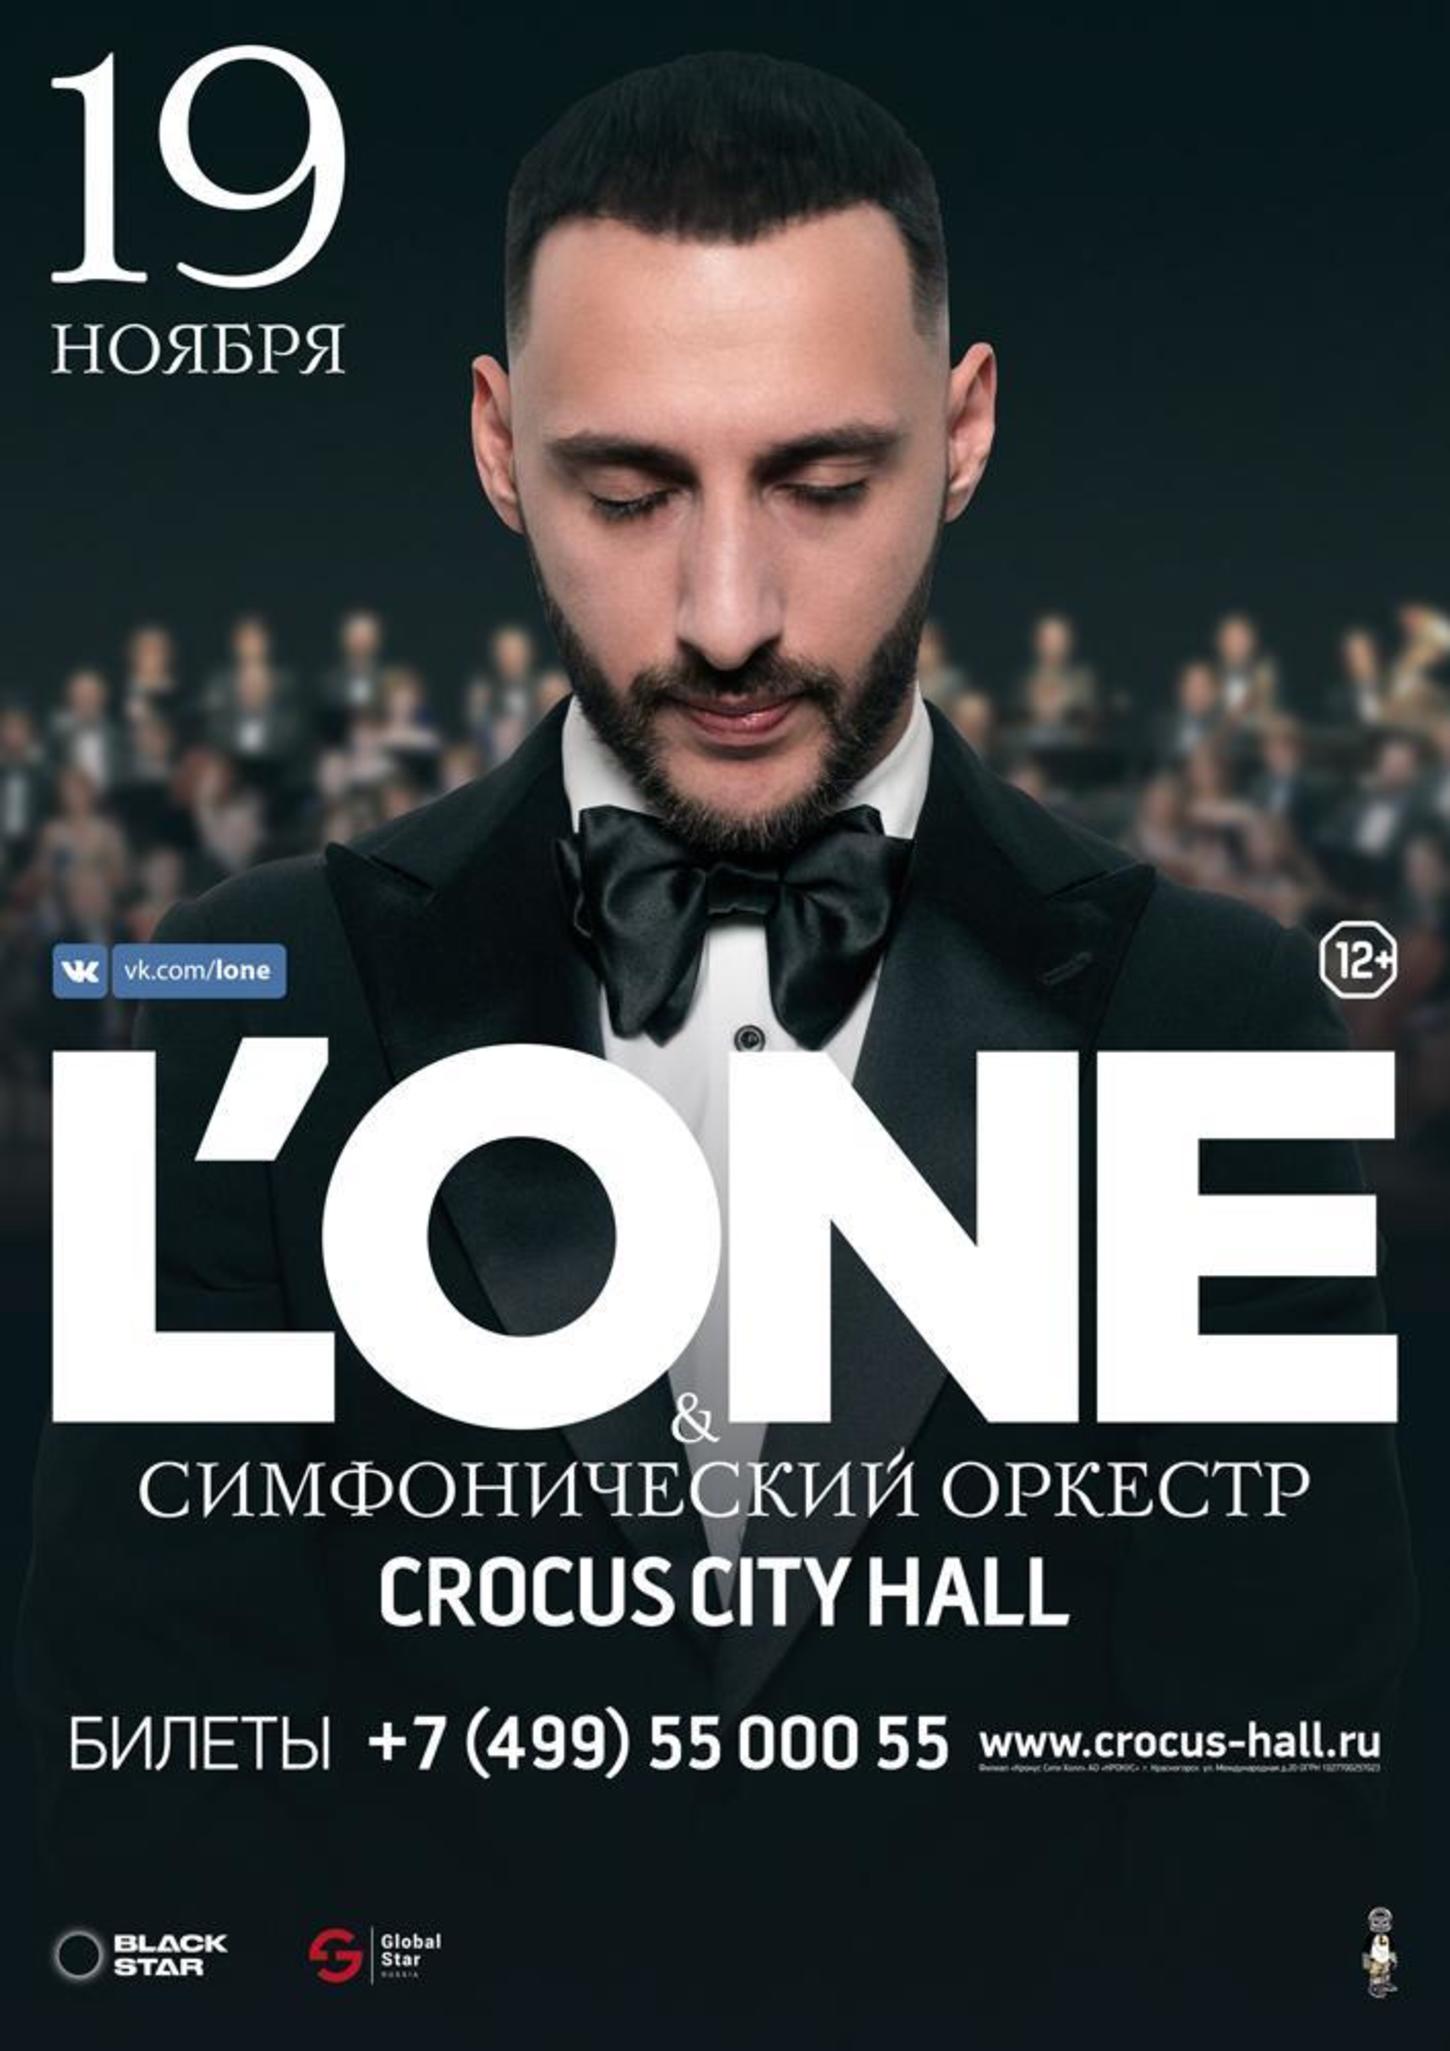 Крокус сити холл расписание концертов 2024 год. Симфонический концерт l'one. Lone Крокус. L'one Крокус Сити Холл. L'one концерт.